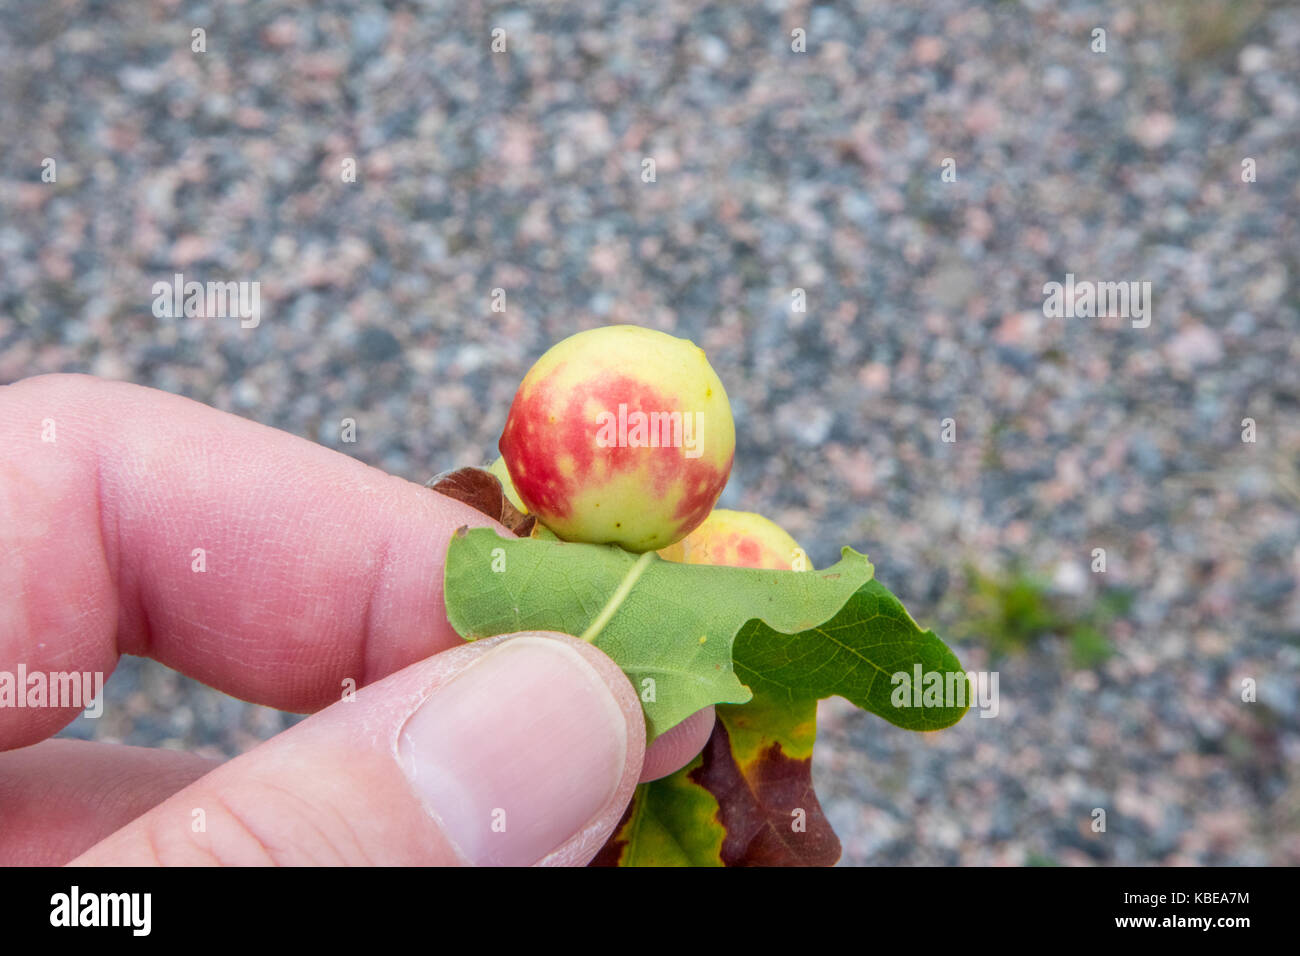 Oak apples on the underside of an oak leaf Stock Photo